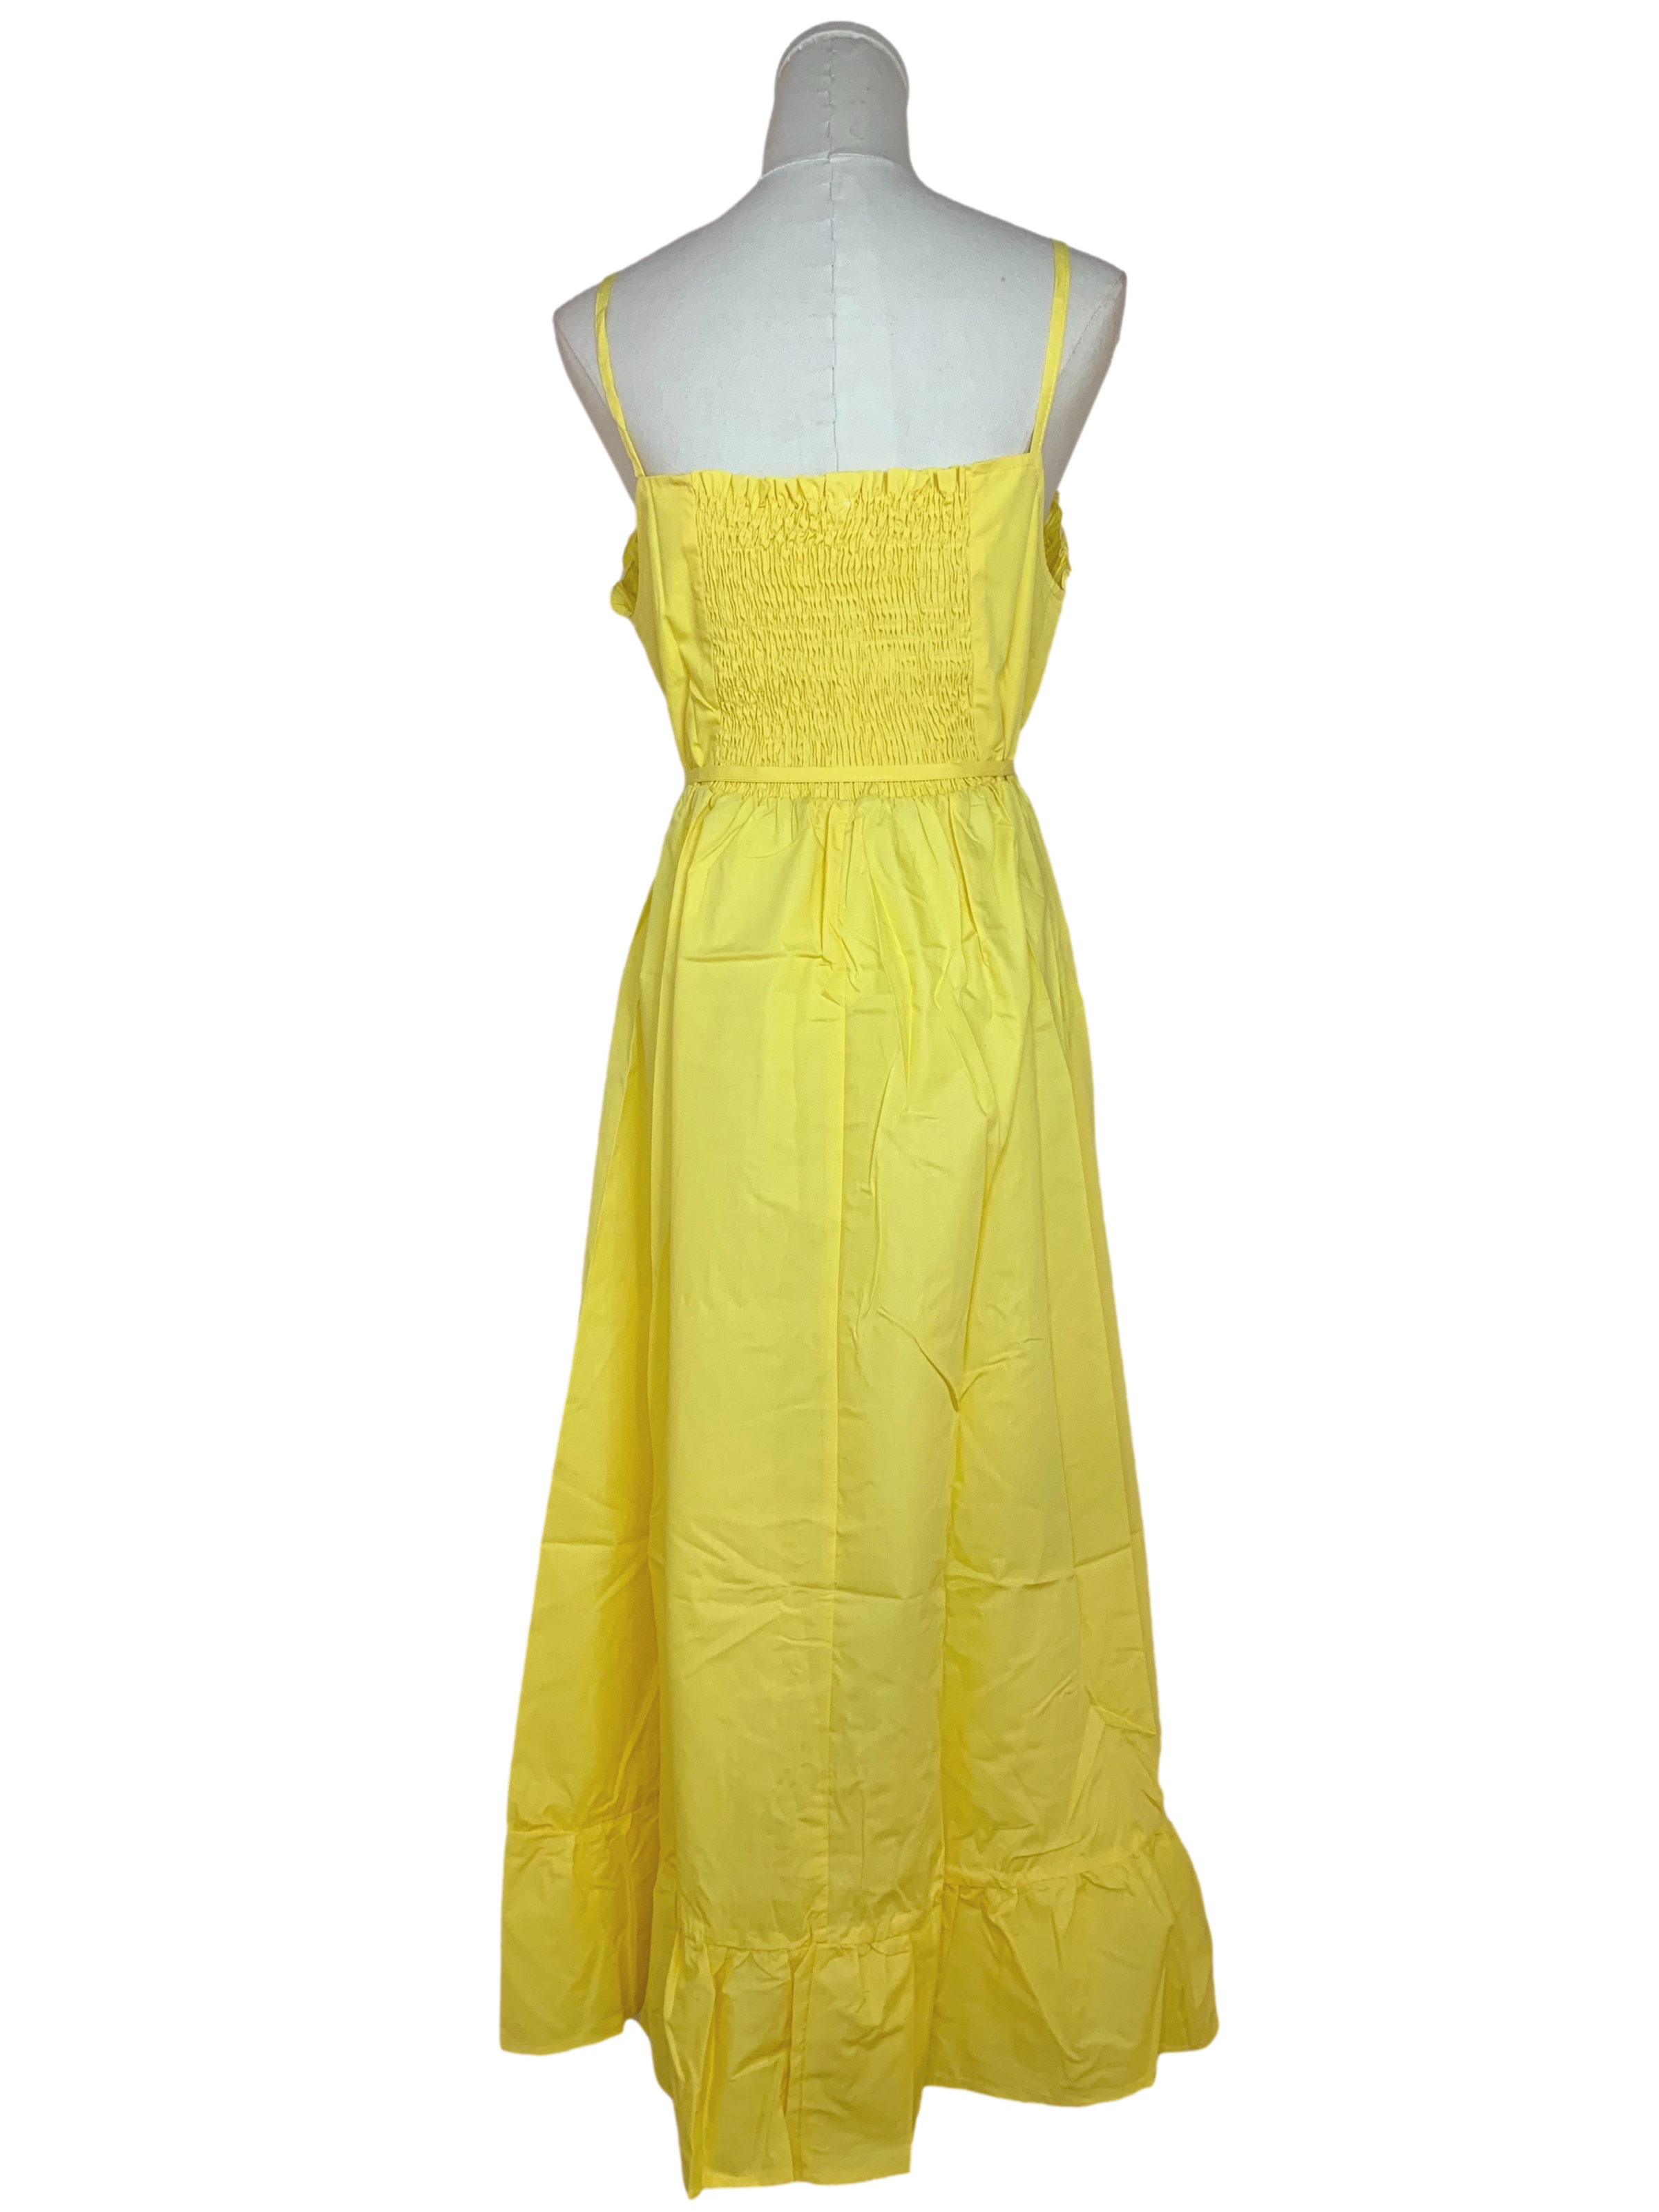 Macaroon Yellow Strap Ruffled Hem Dress